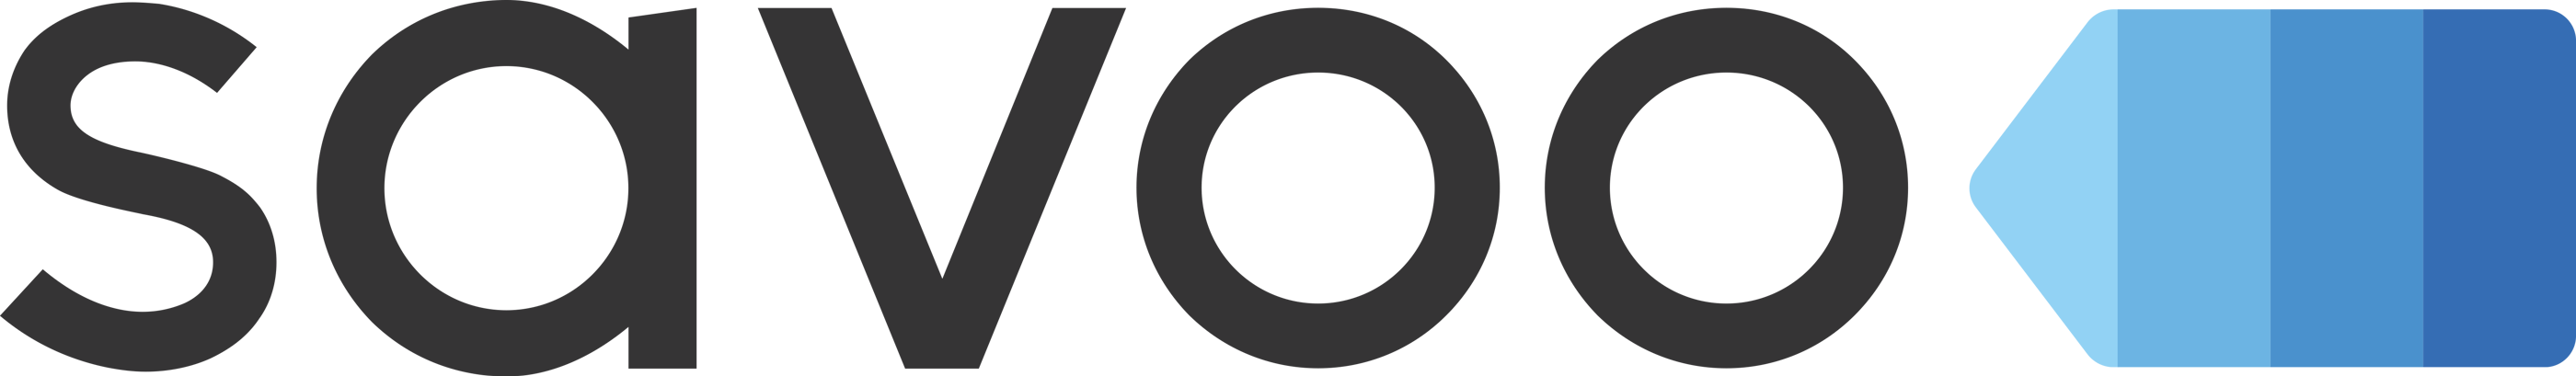 savoo-logo.png